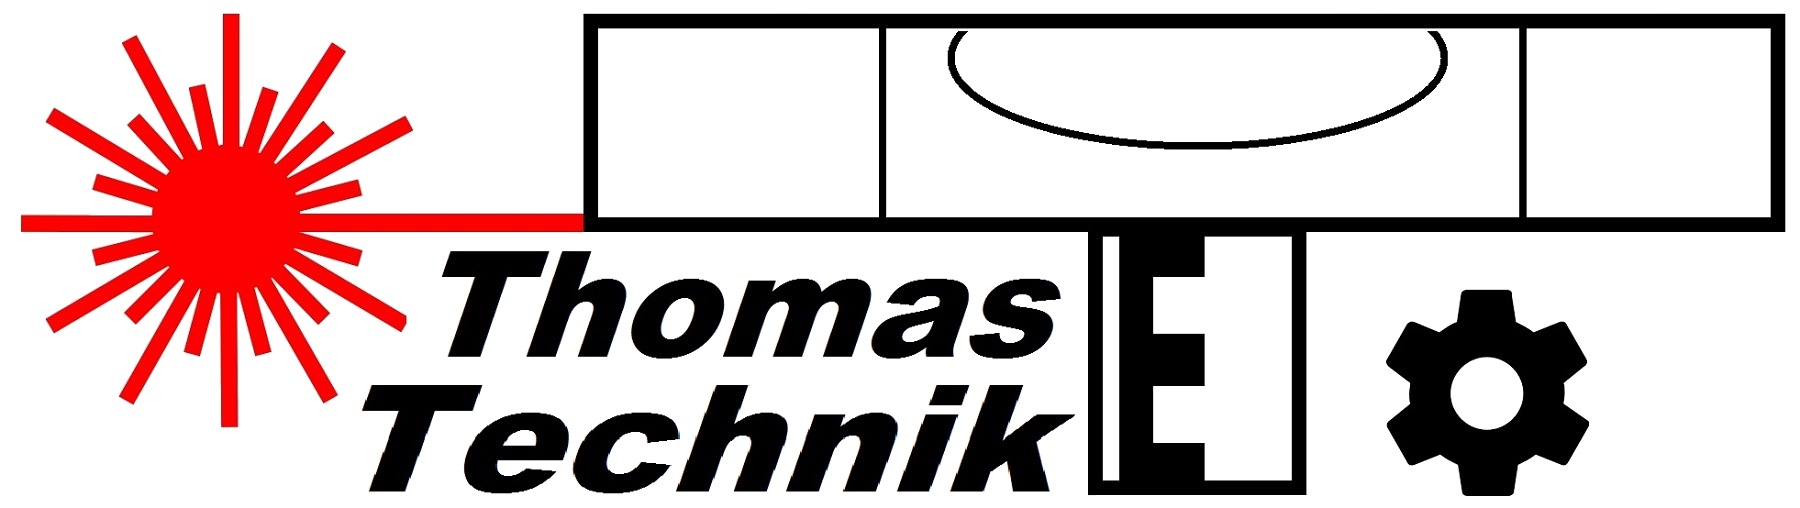 Die Thomastechnik GmbH ist ein erfahrenes Team von Spezialisten in der Bau- und Vermessungstechnik